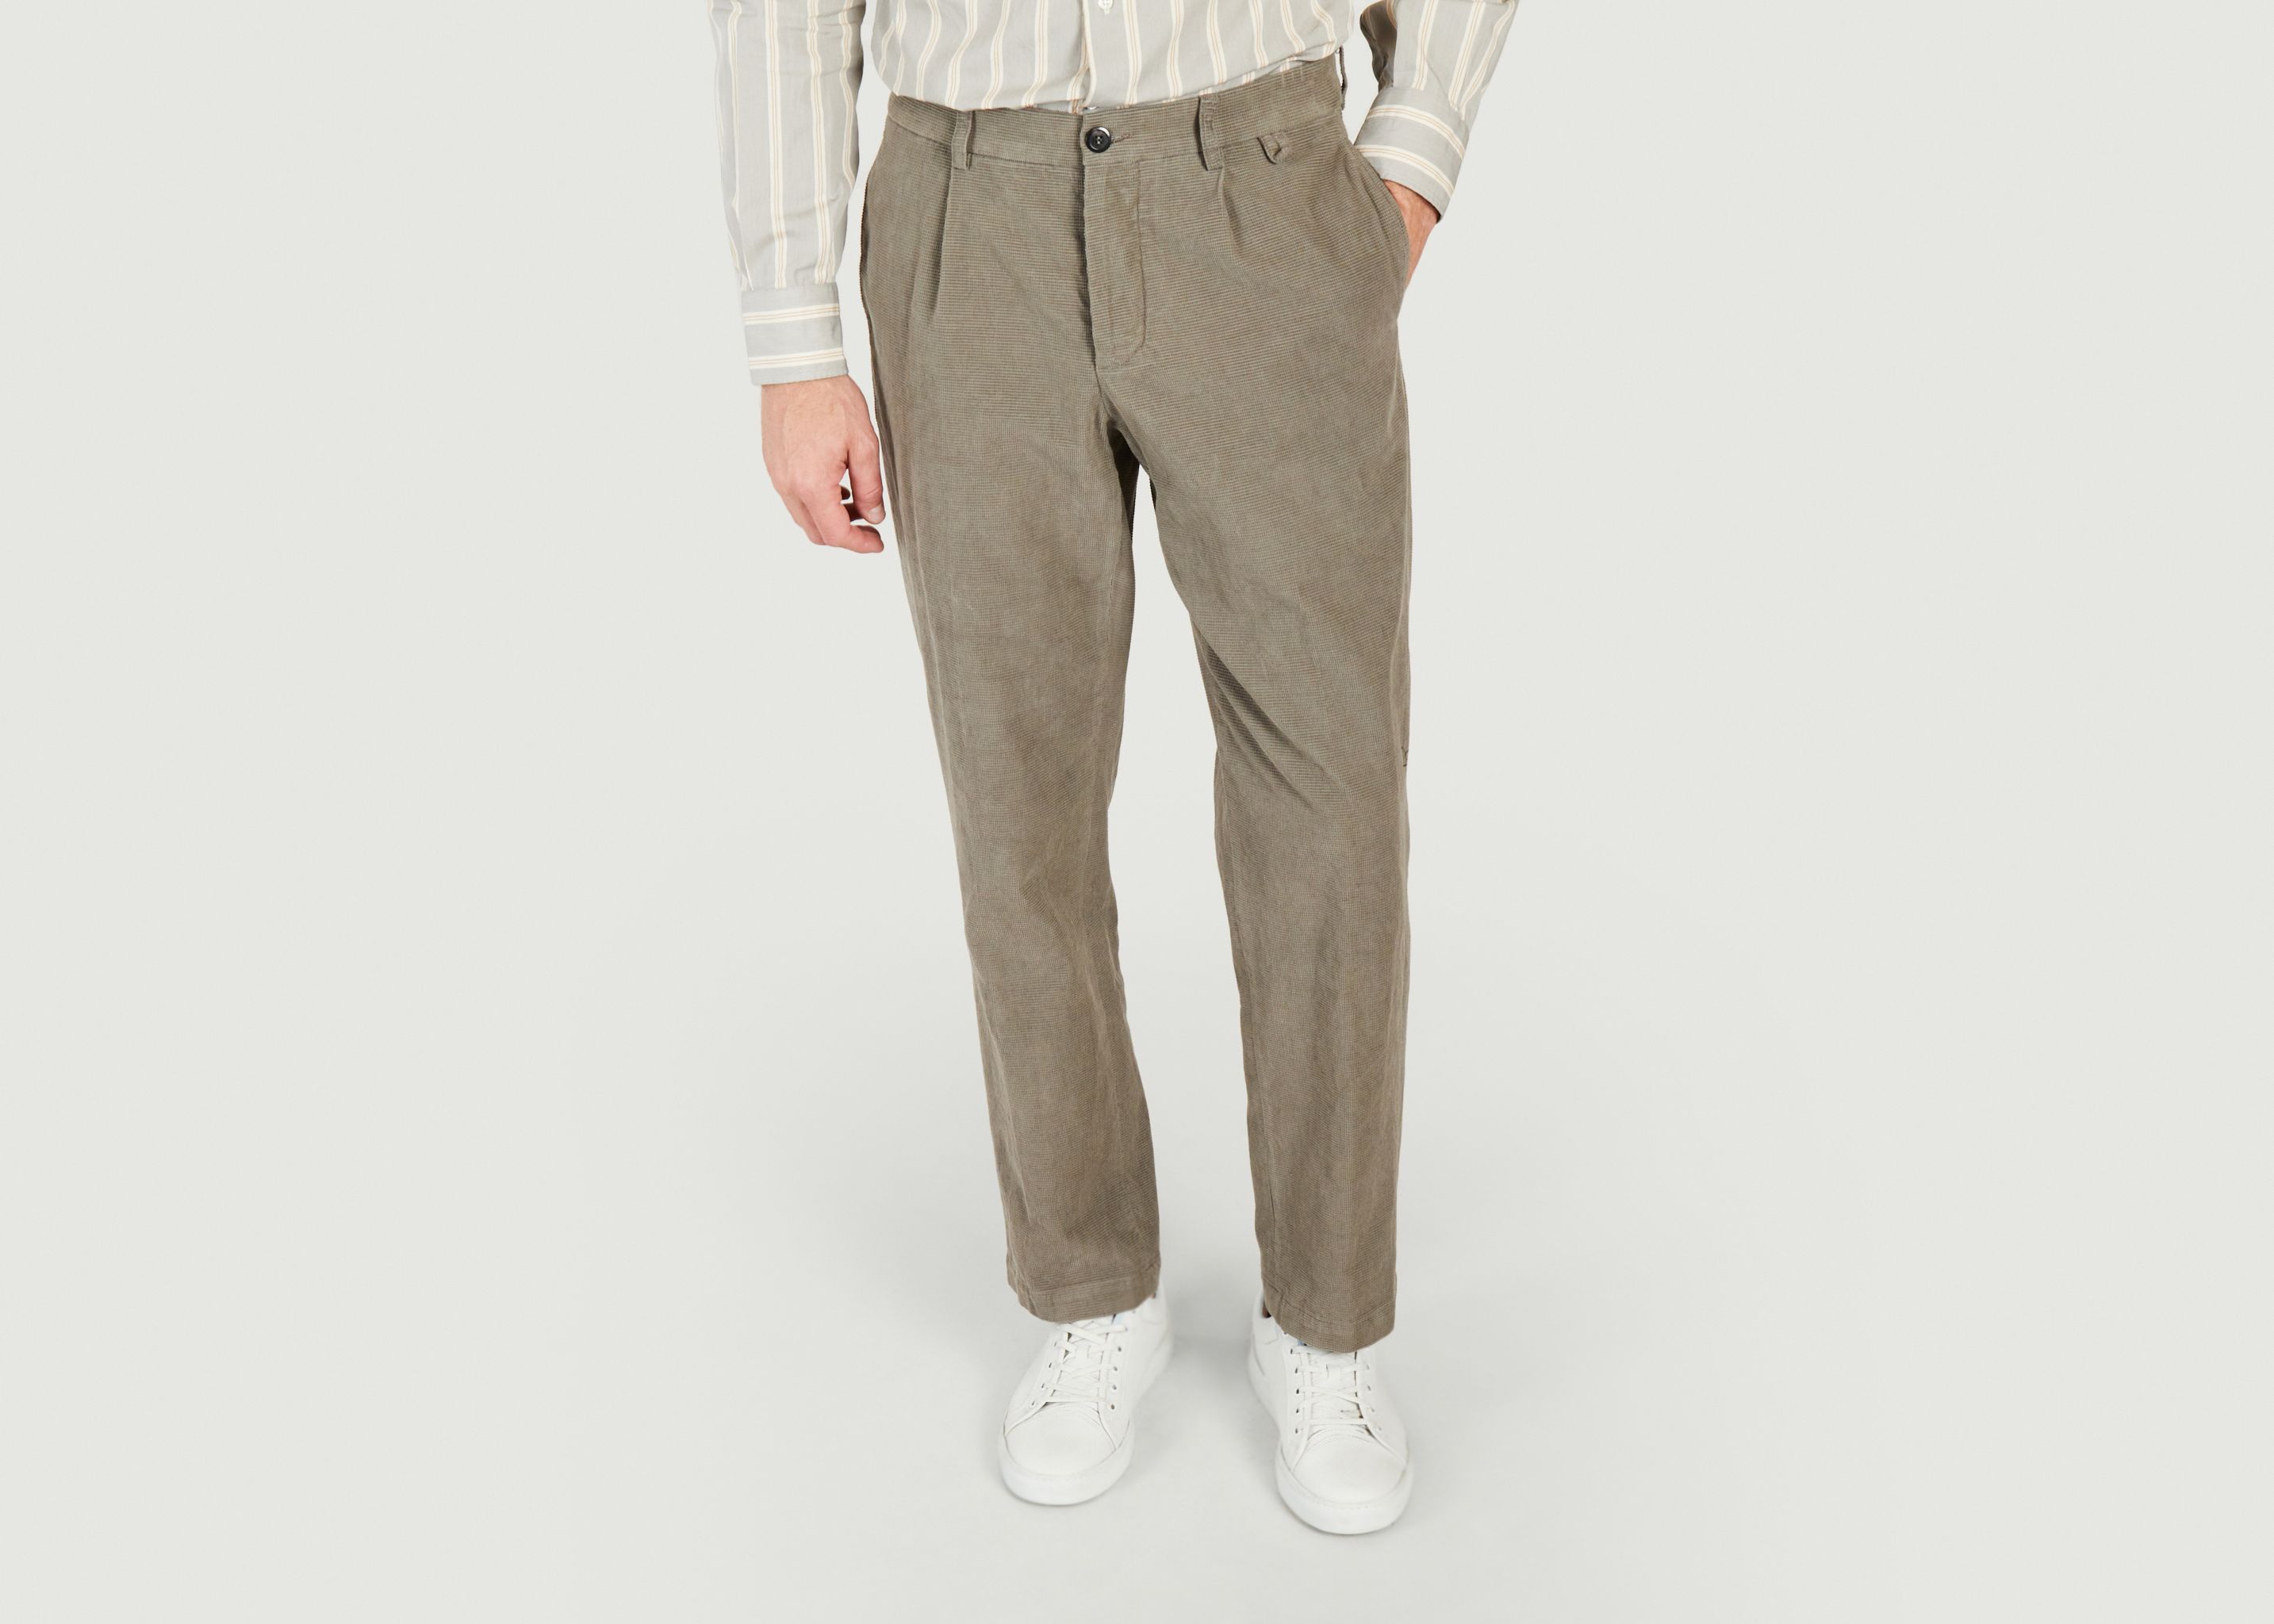 Pantalon Miniera en chanvre laine et coton  - A.B.C.L. Garments